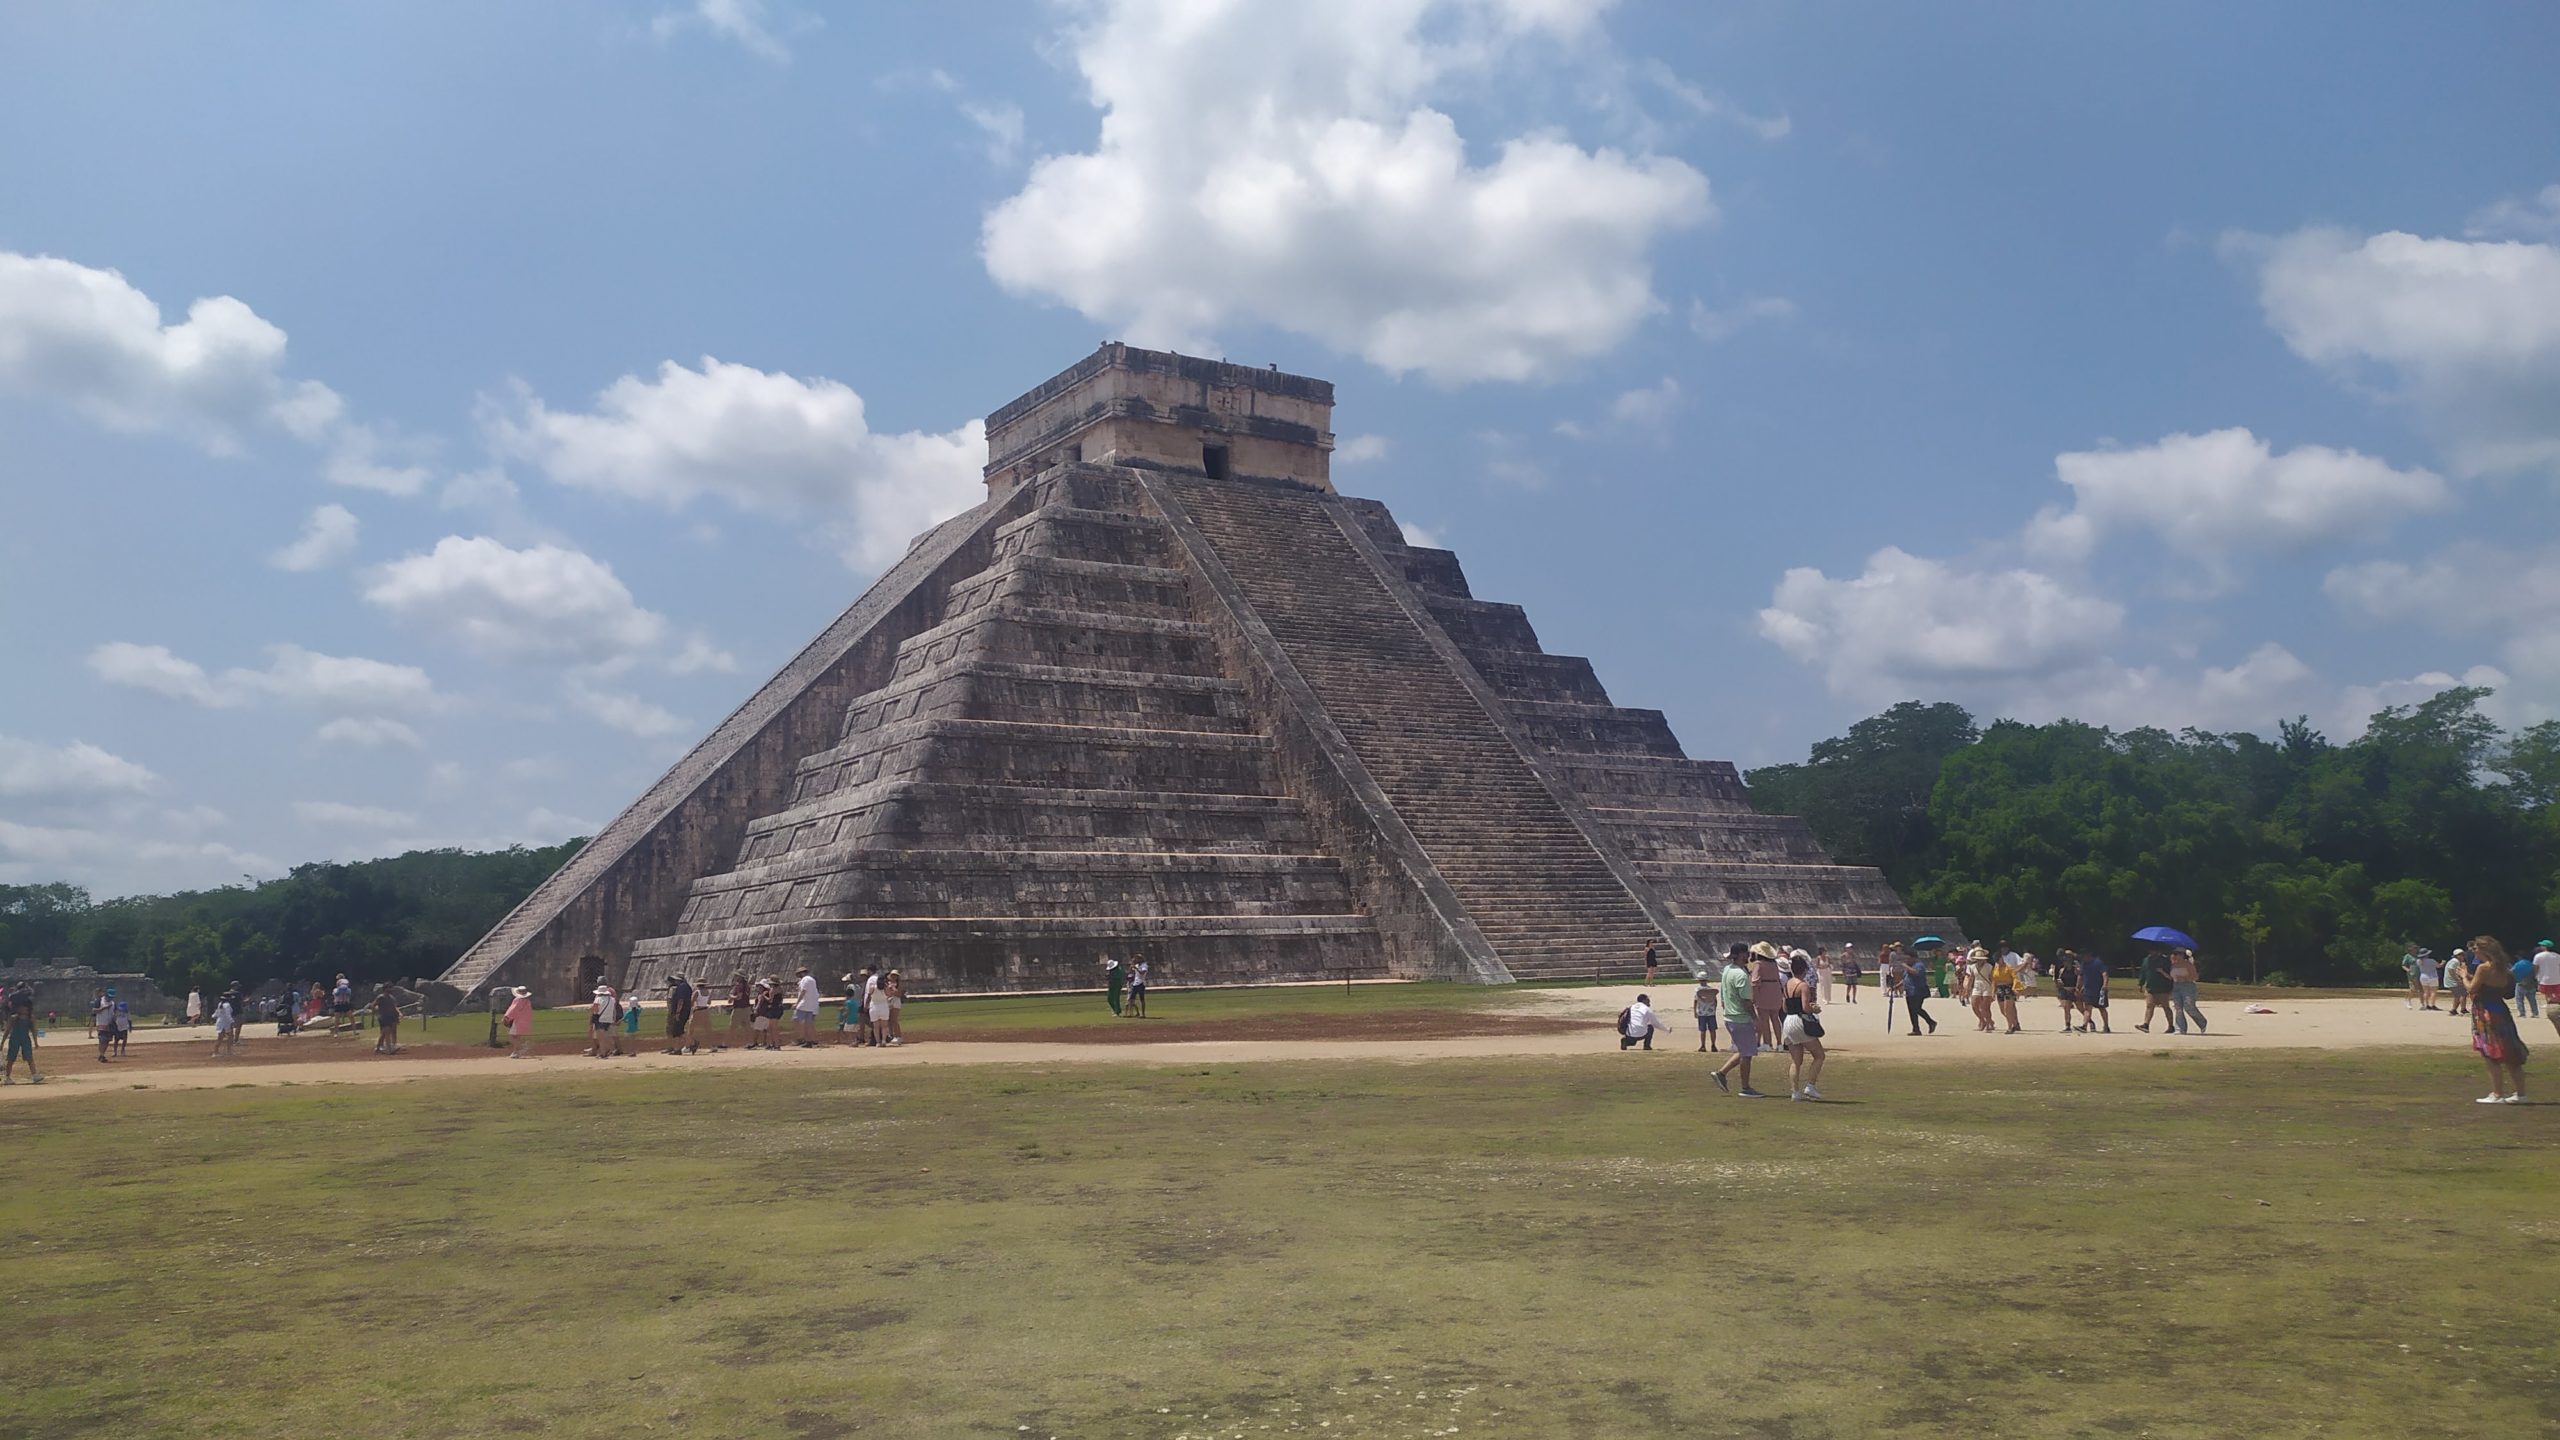 Une des nombreuses pyramides de chichen itza se dresse devant moi. des touristes se tiennent aux abords, téléphones en main